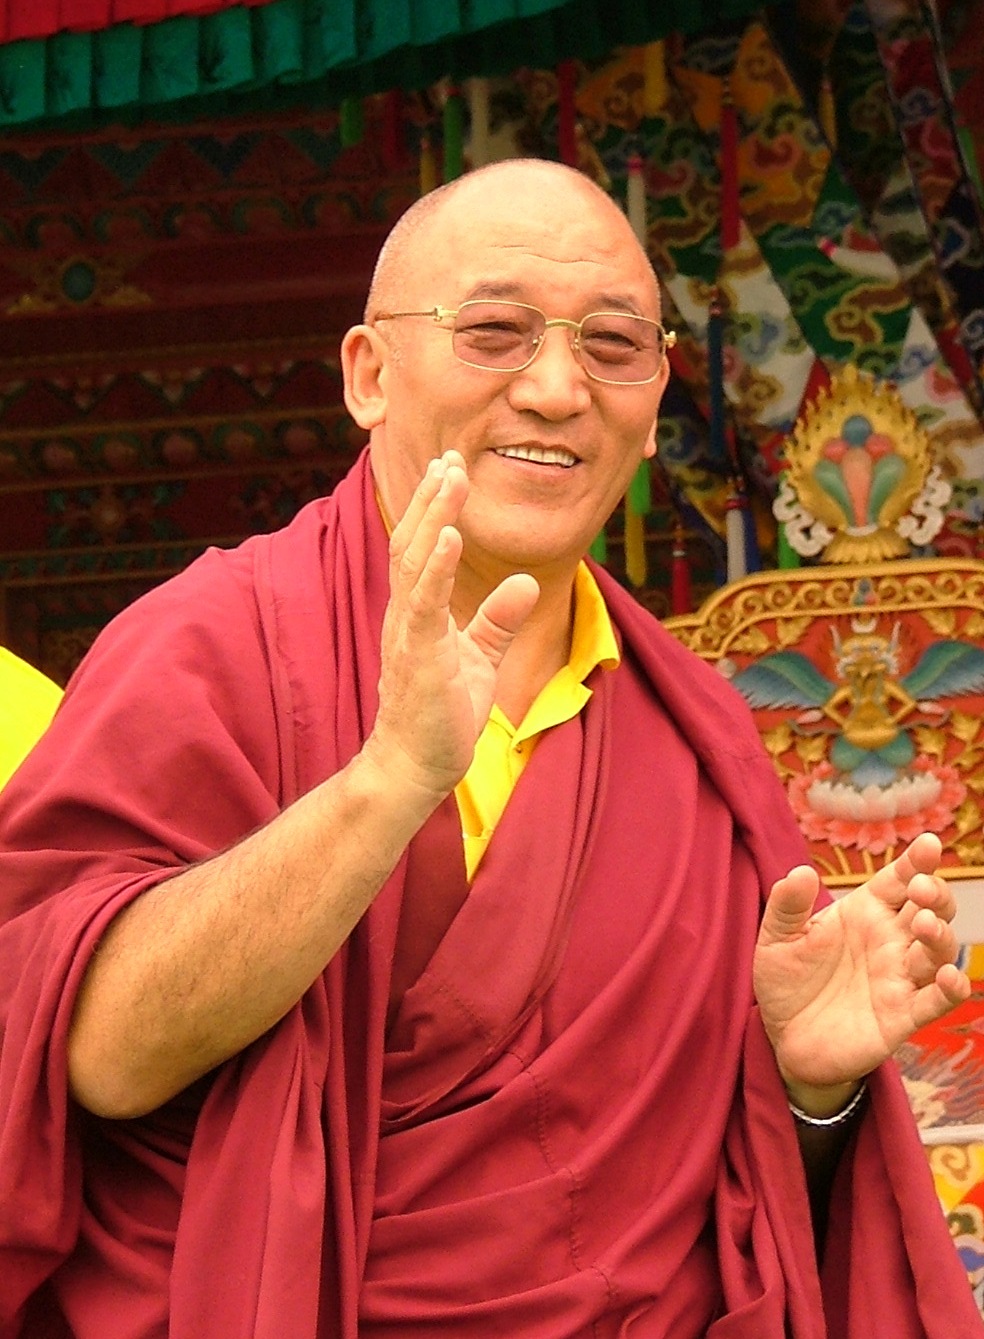 His Eminence Ayang Tulku Rinpoche